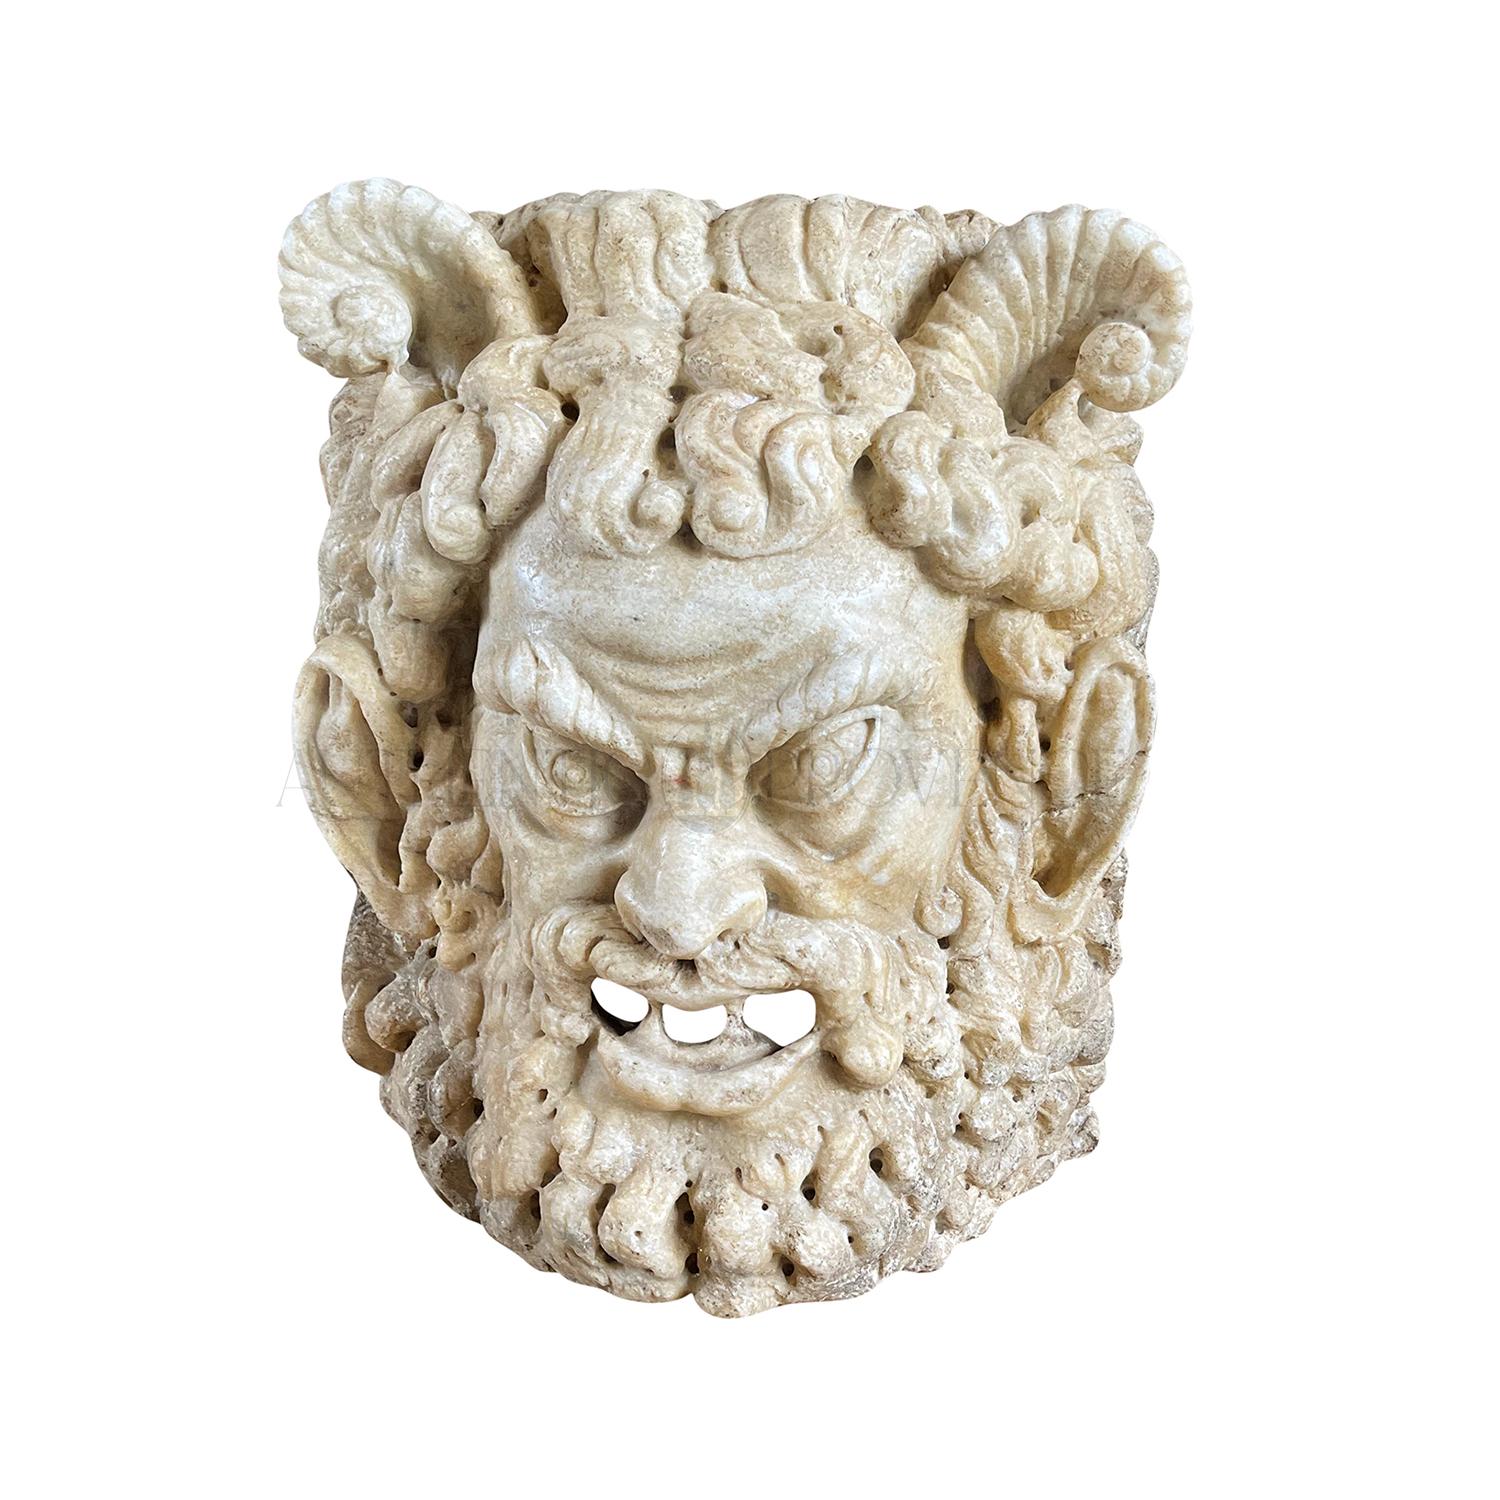 Masque de satyre mythologique en marbre sculpté à la main à la fin du 18e/19e siècle avec des cornes, patine d'usage en bon état. Le fragment de support mural en marbre italien de Carrare, sculpté à la main, a été réalisé de manière très détaillée.